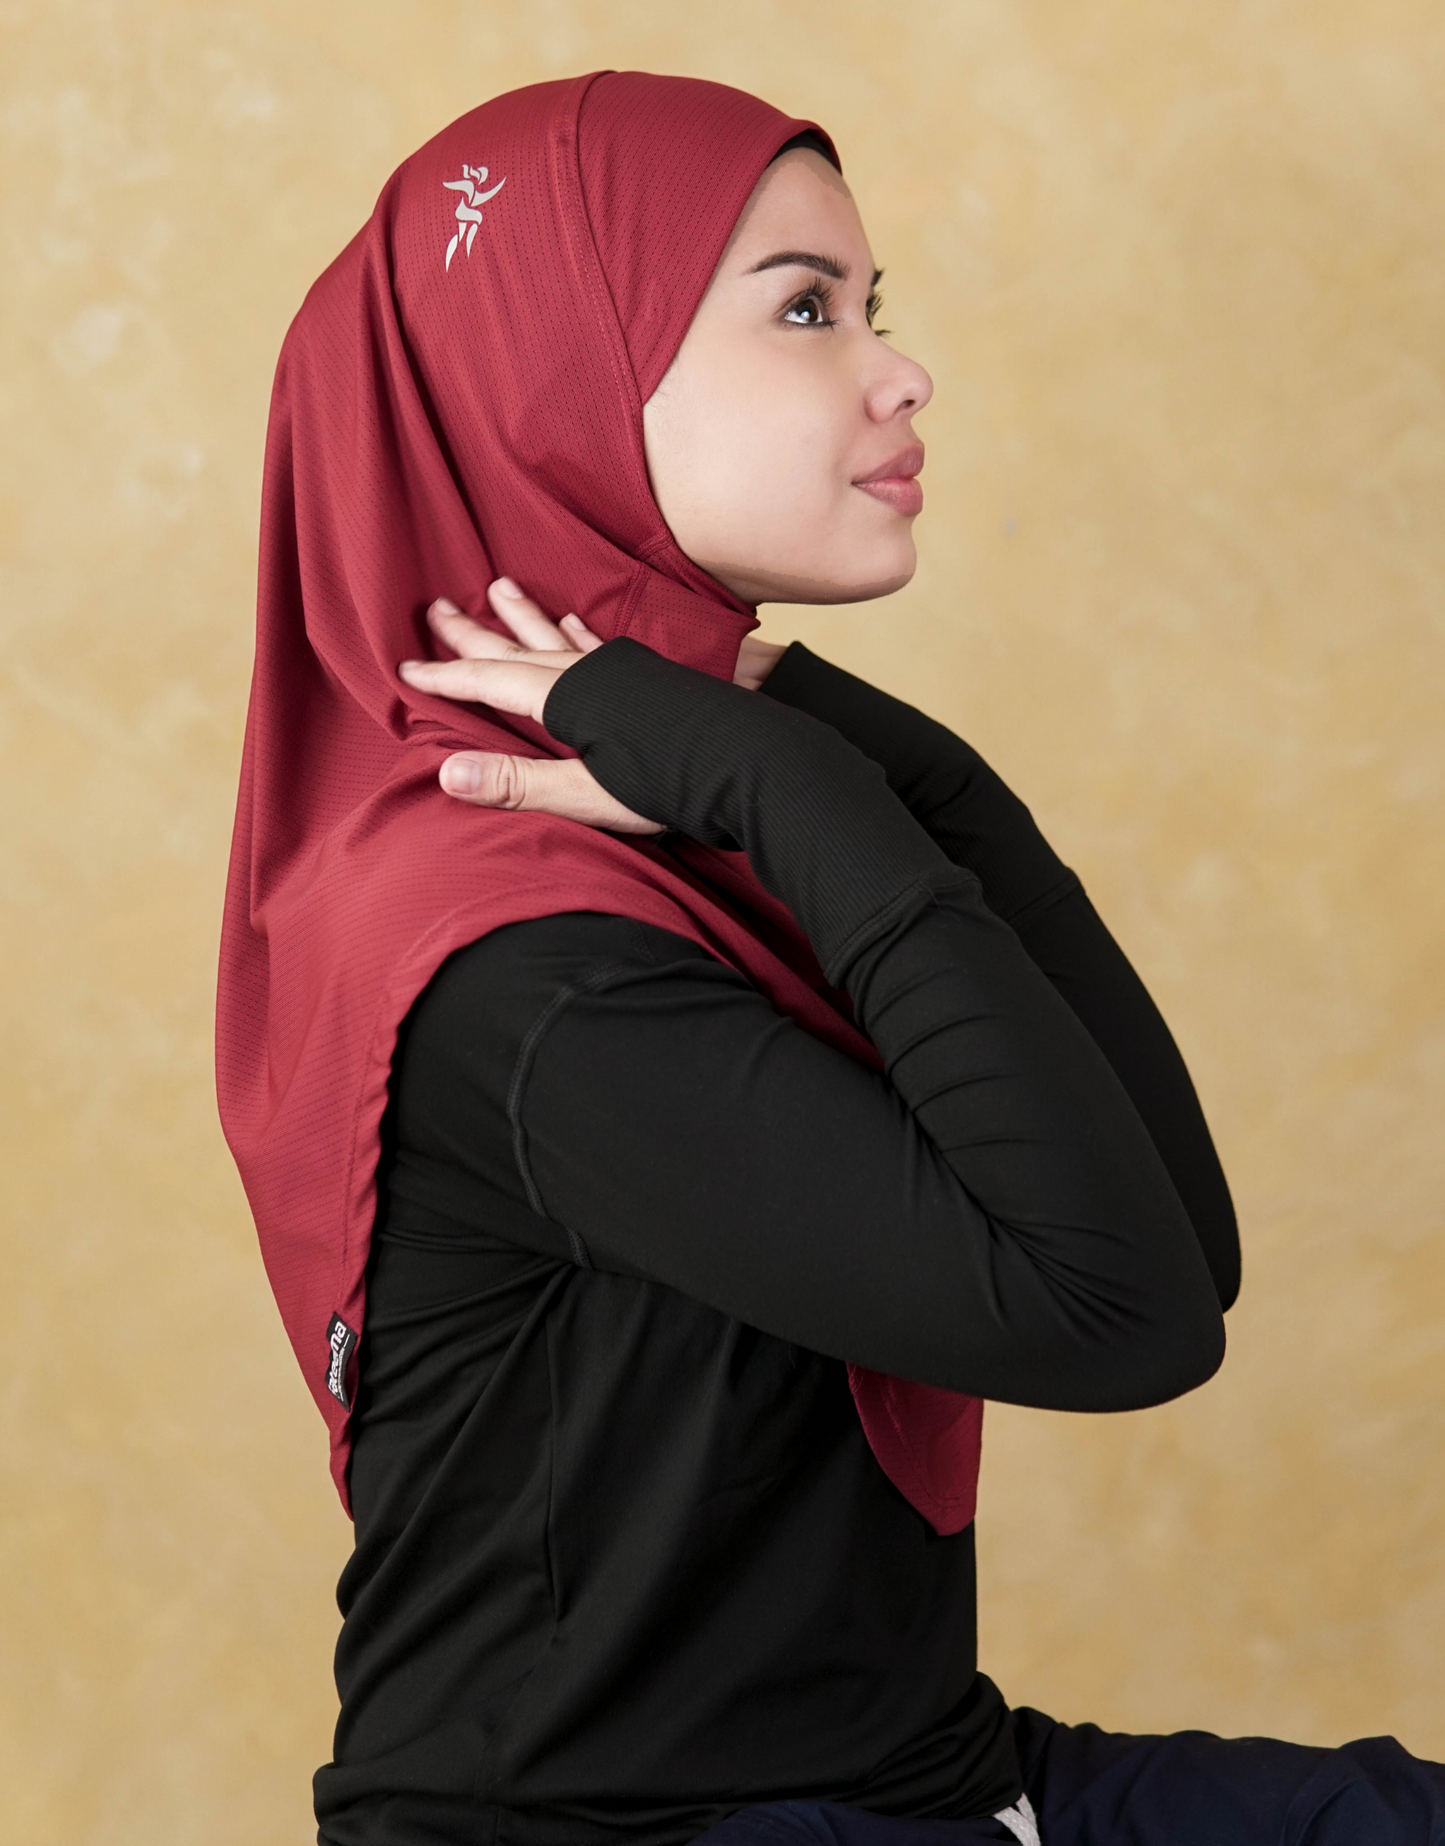 Swift Sports Hijab - Medium